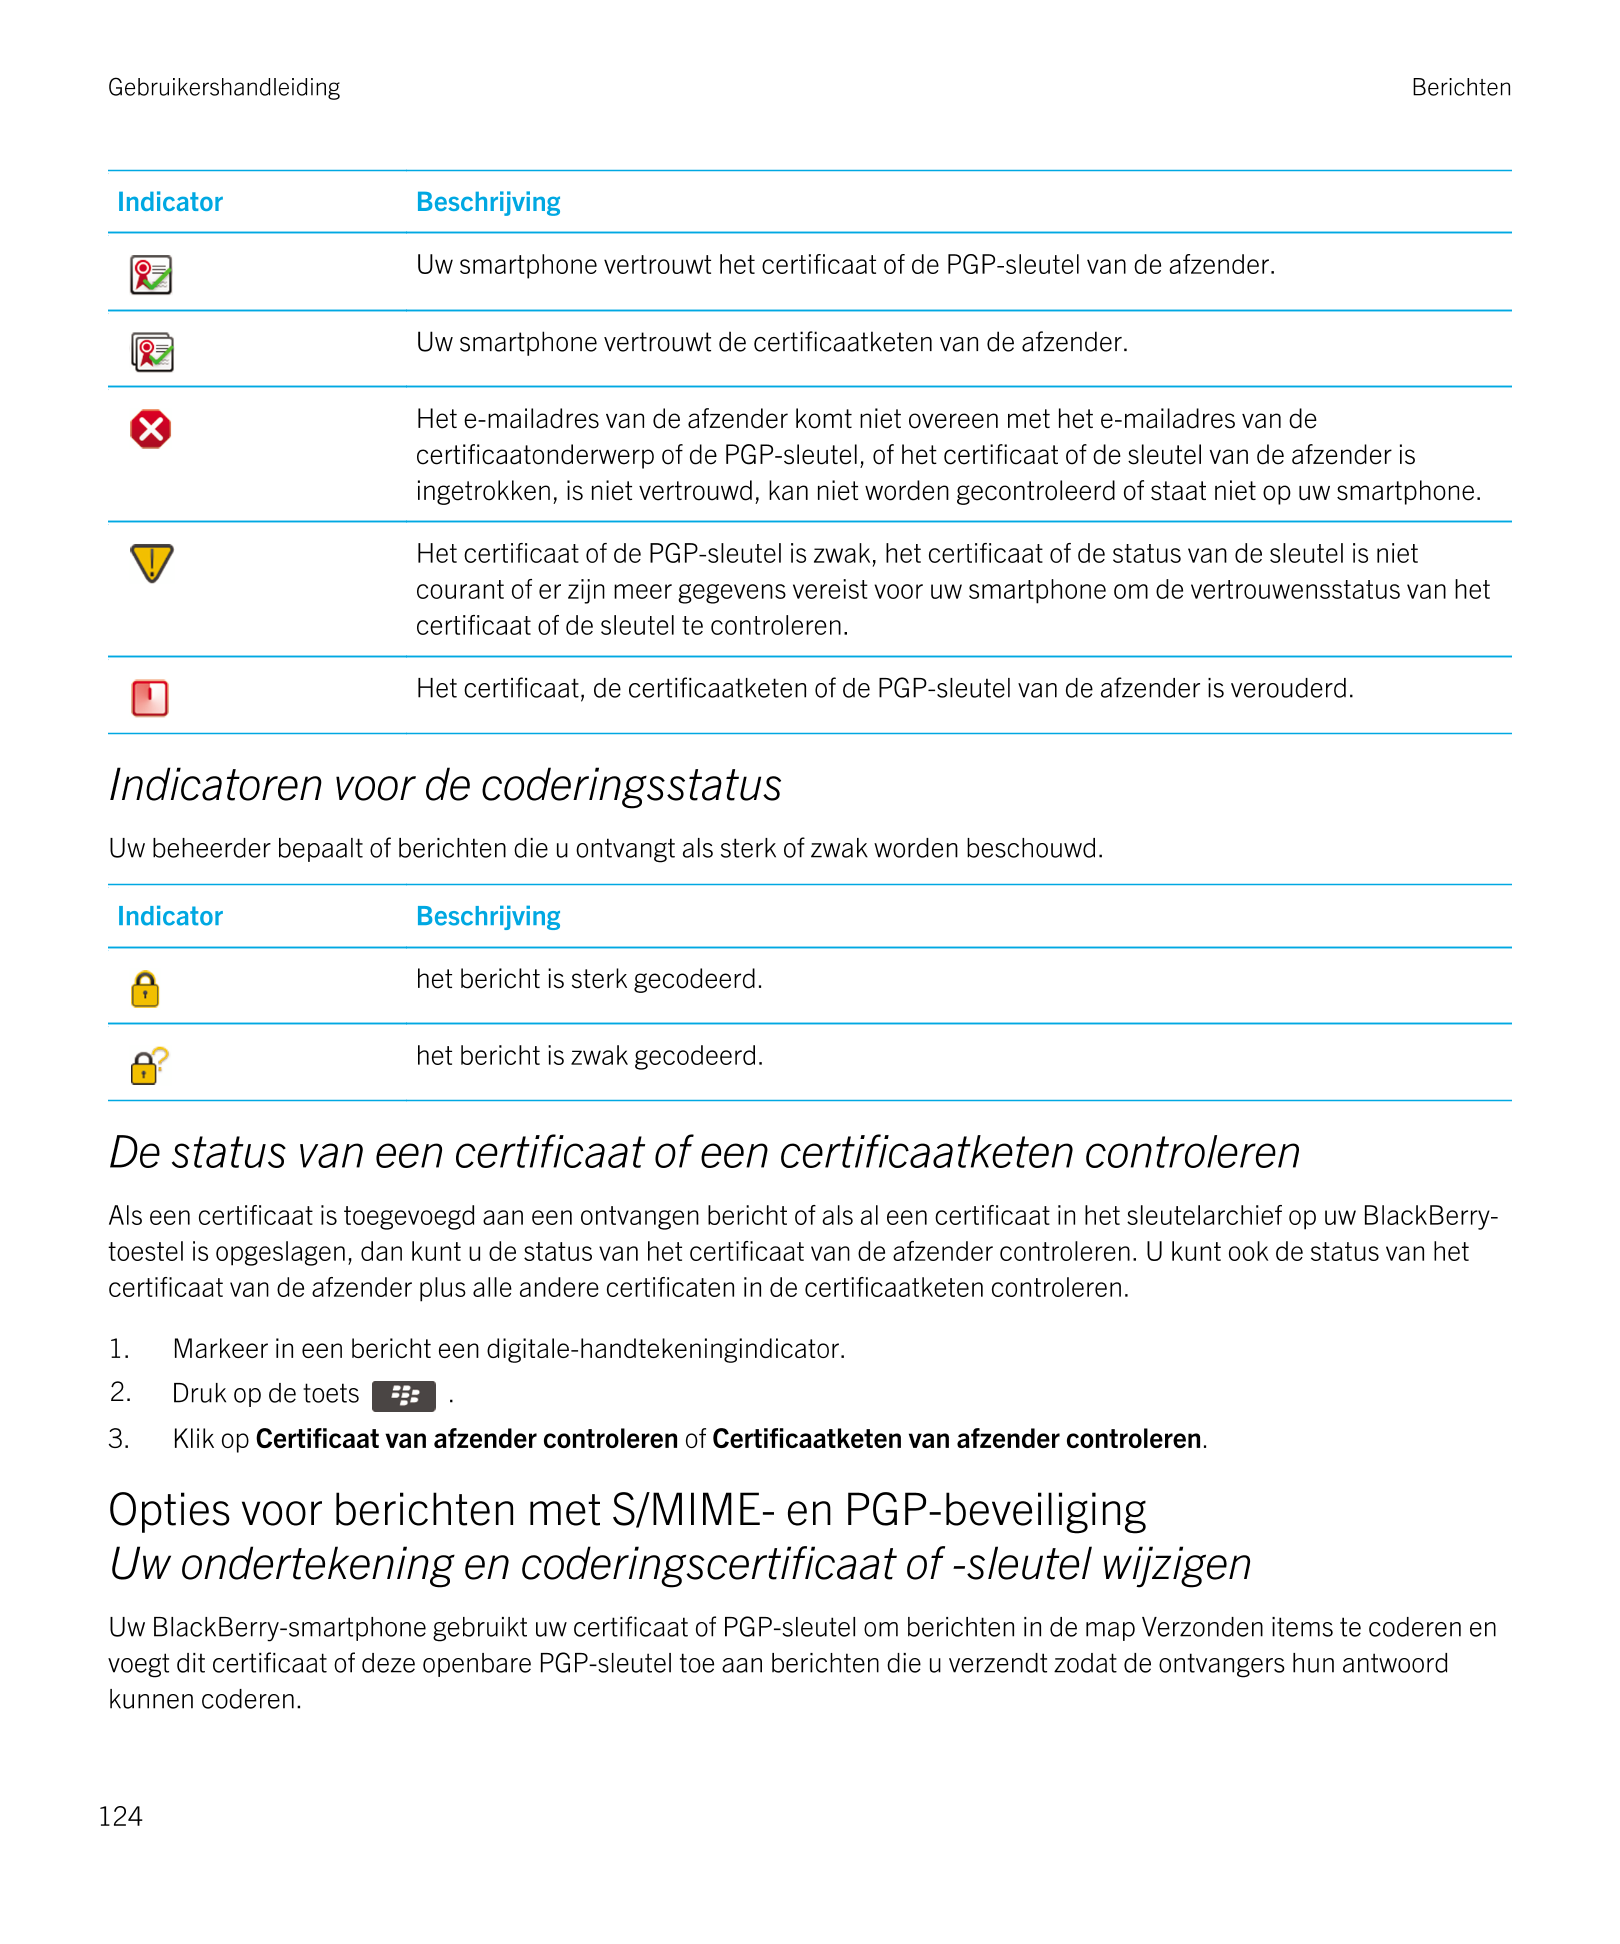 Gebruikershandleiding Berichten
Indicator Beschrijving 
  Uw smartphone vertrouwt het certificaat of de  PGP-sleutel van de afze